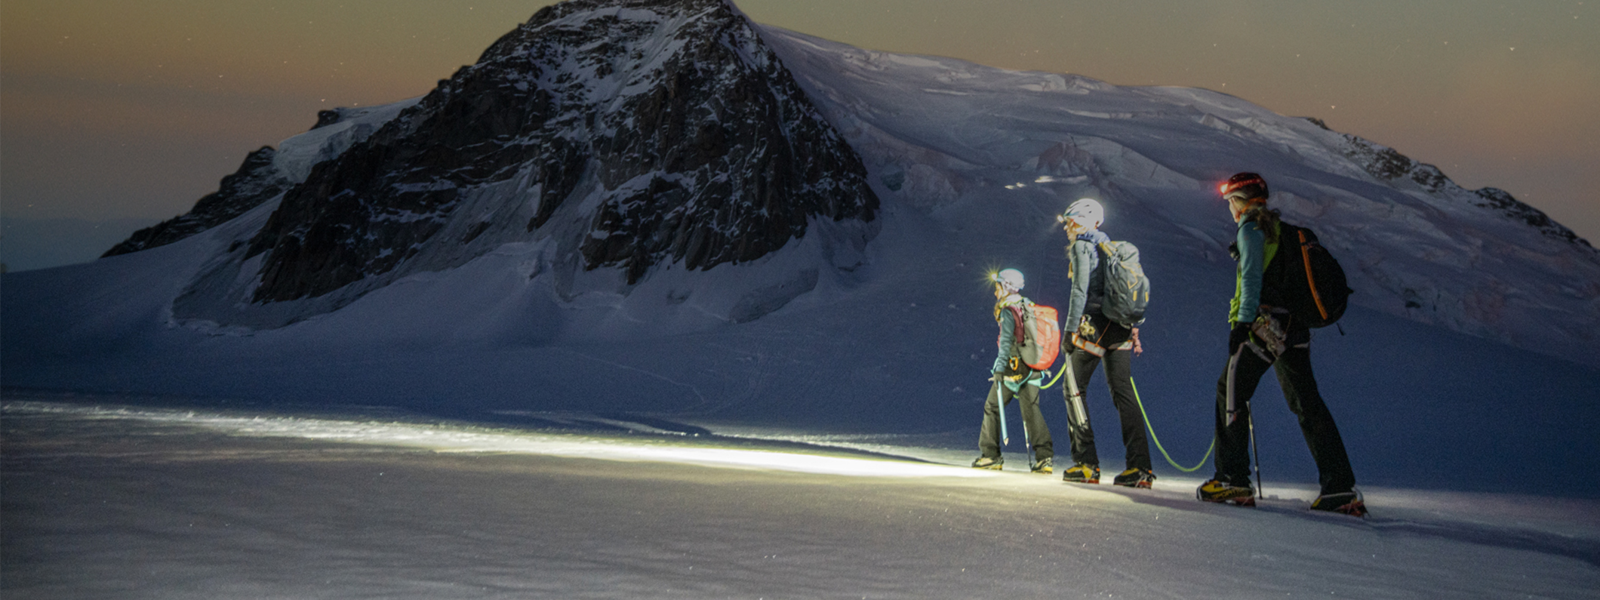 三位徒步旅行者在星空下穿越雪山